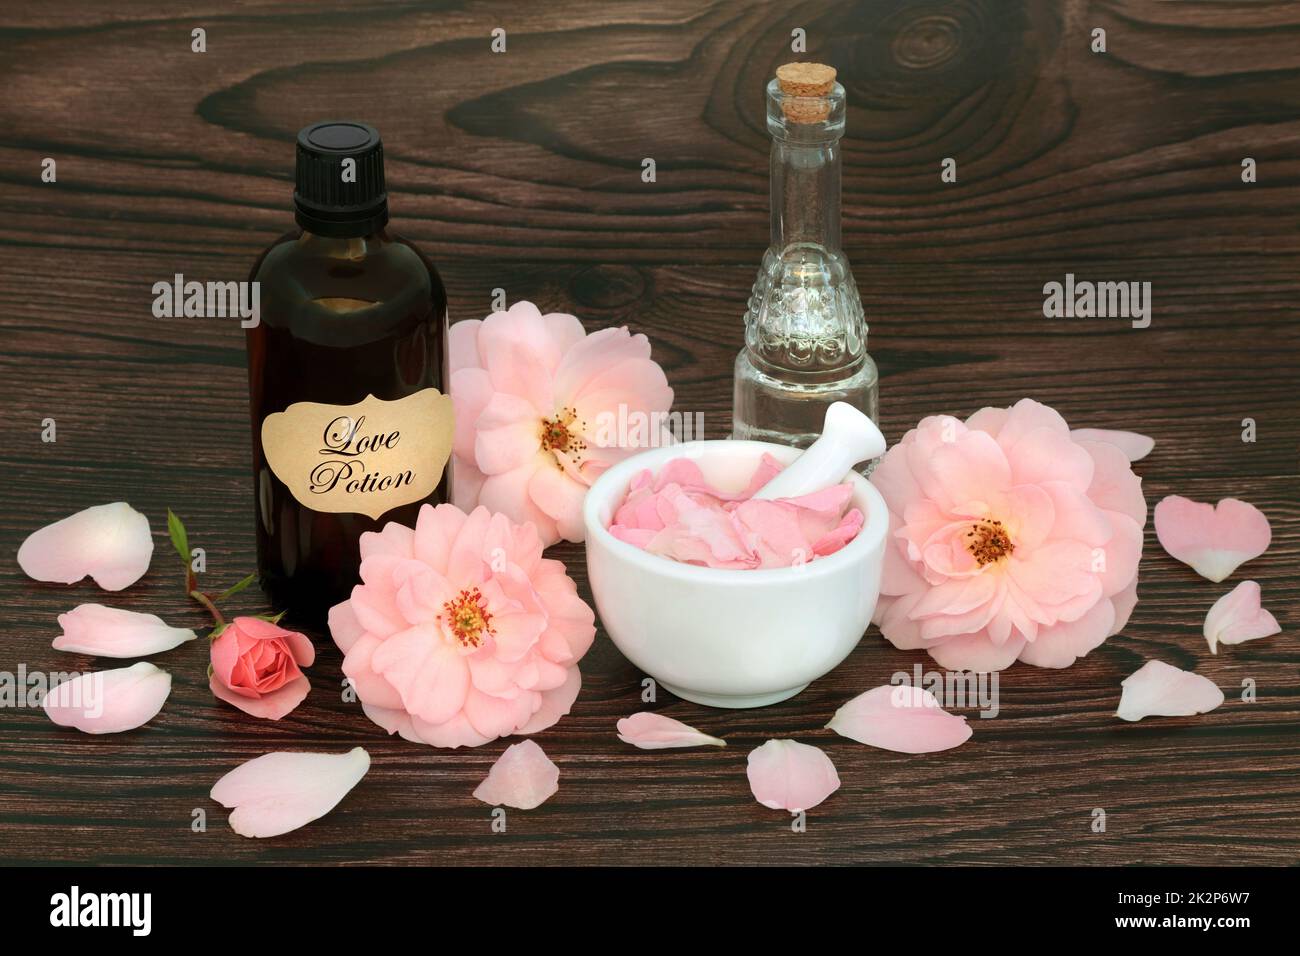 Fleurs roses pour la potion magique d'amour sort avec concoction dans une bouteille, cristal de quartz rose et eau de source. Wiccan occulte concept mystique pour l'amant Banque D'Images